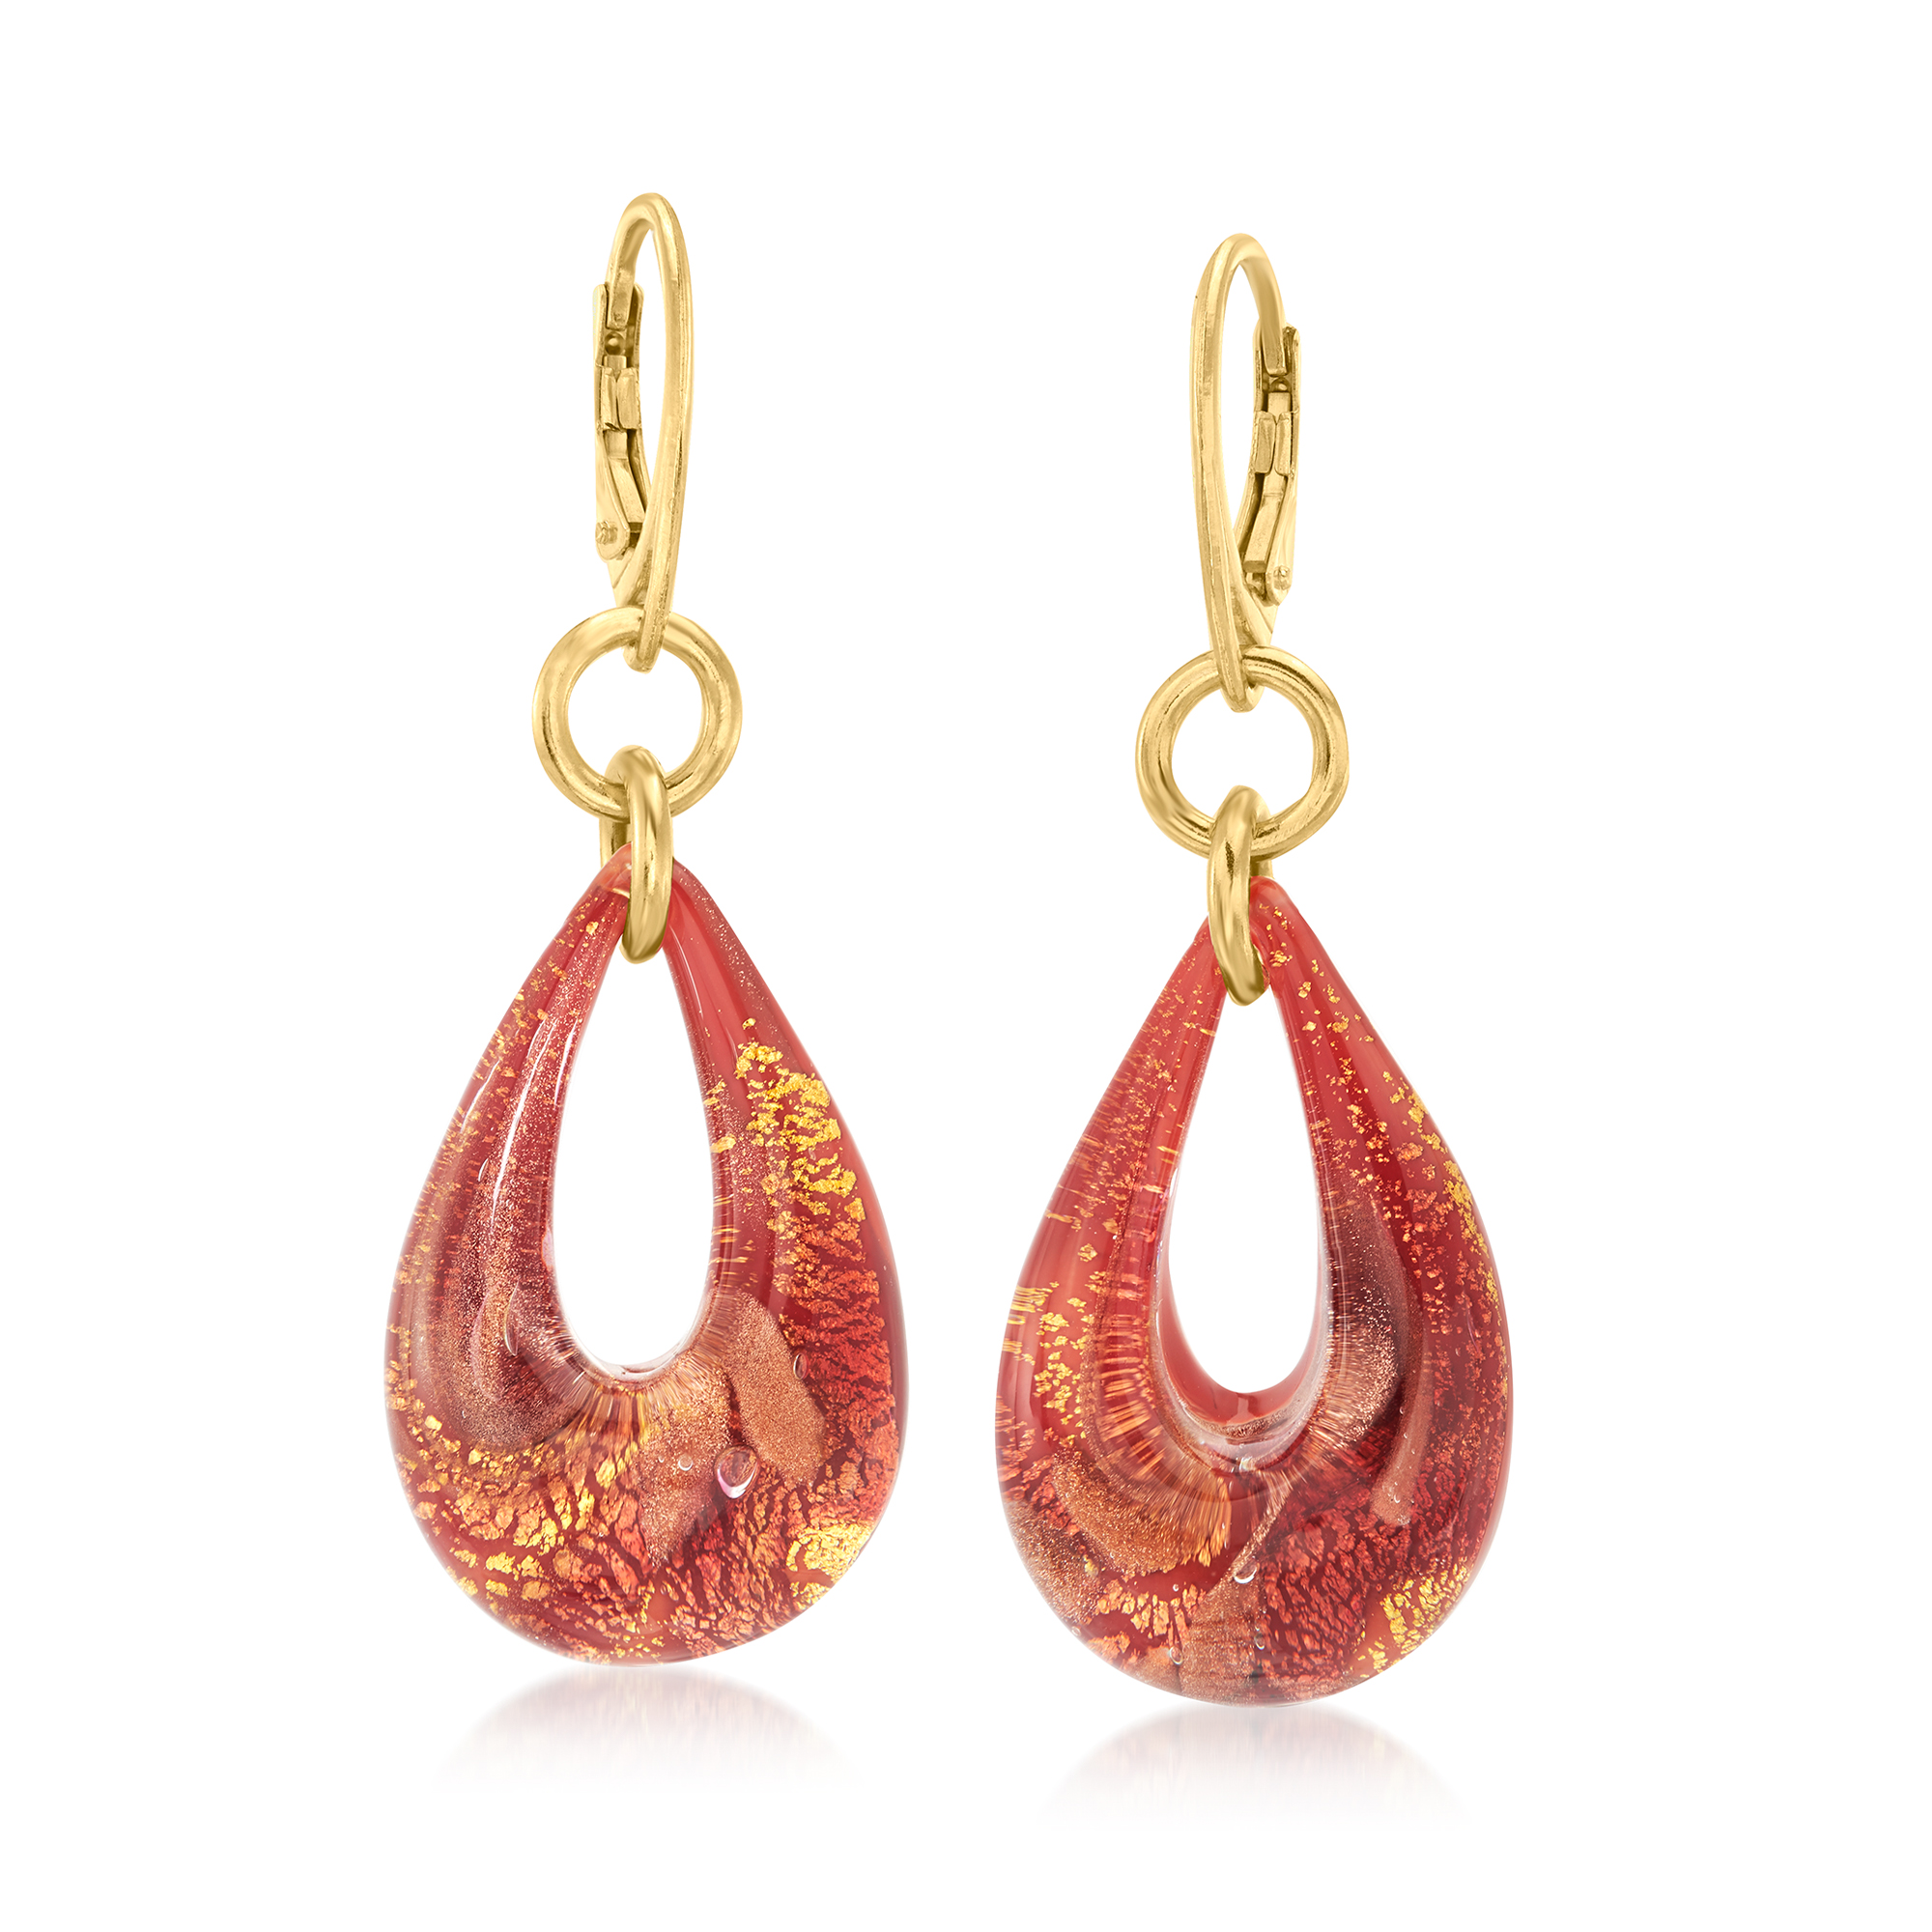 Italian Murano Glass Teardrop Earrings in 18kt Gold Over Sterling 